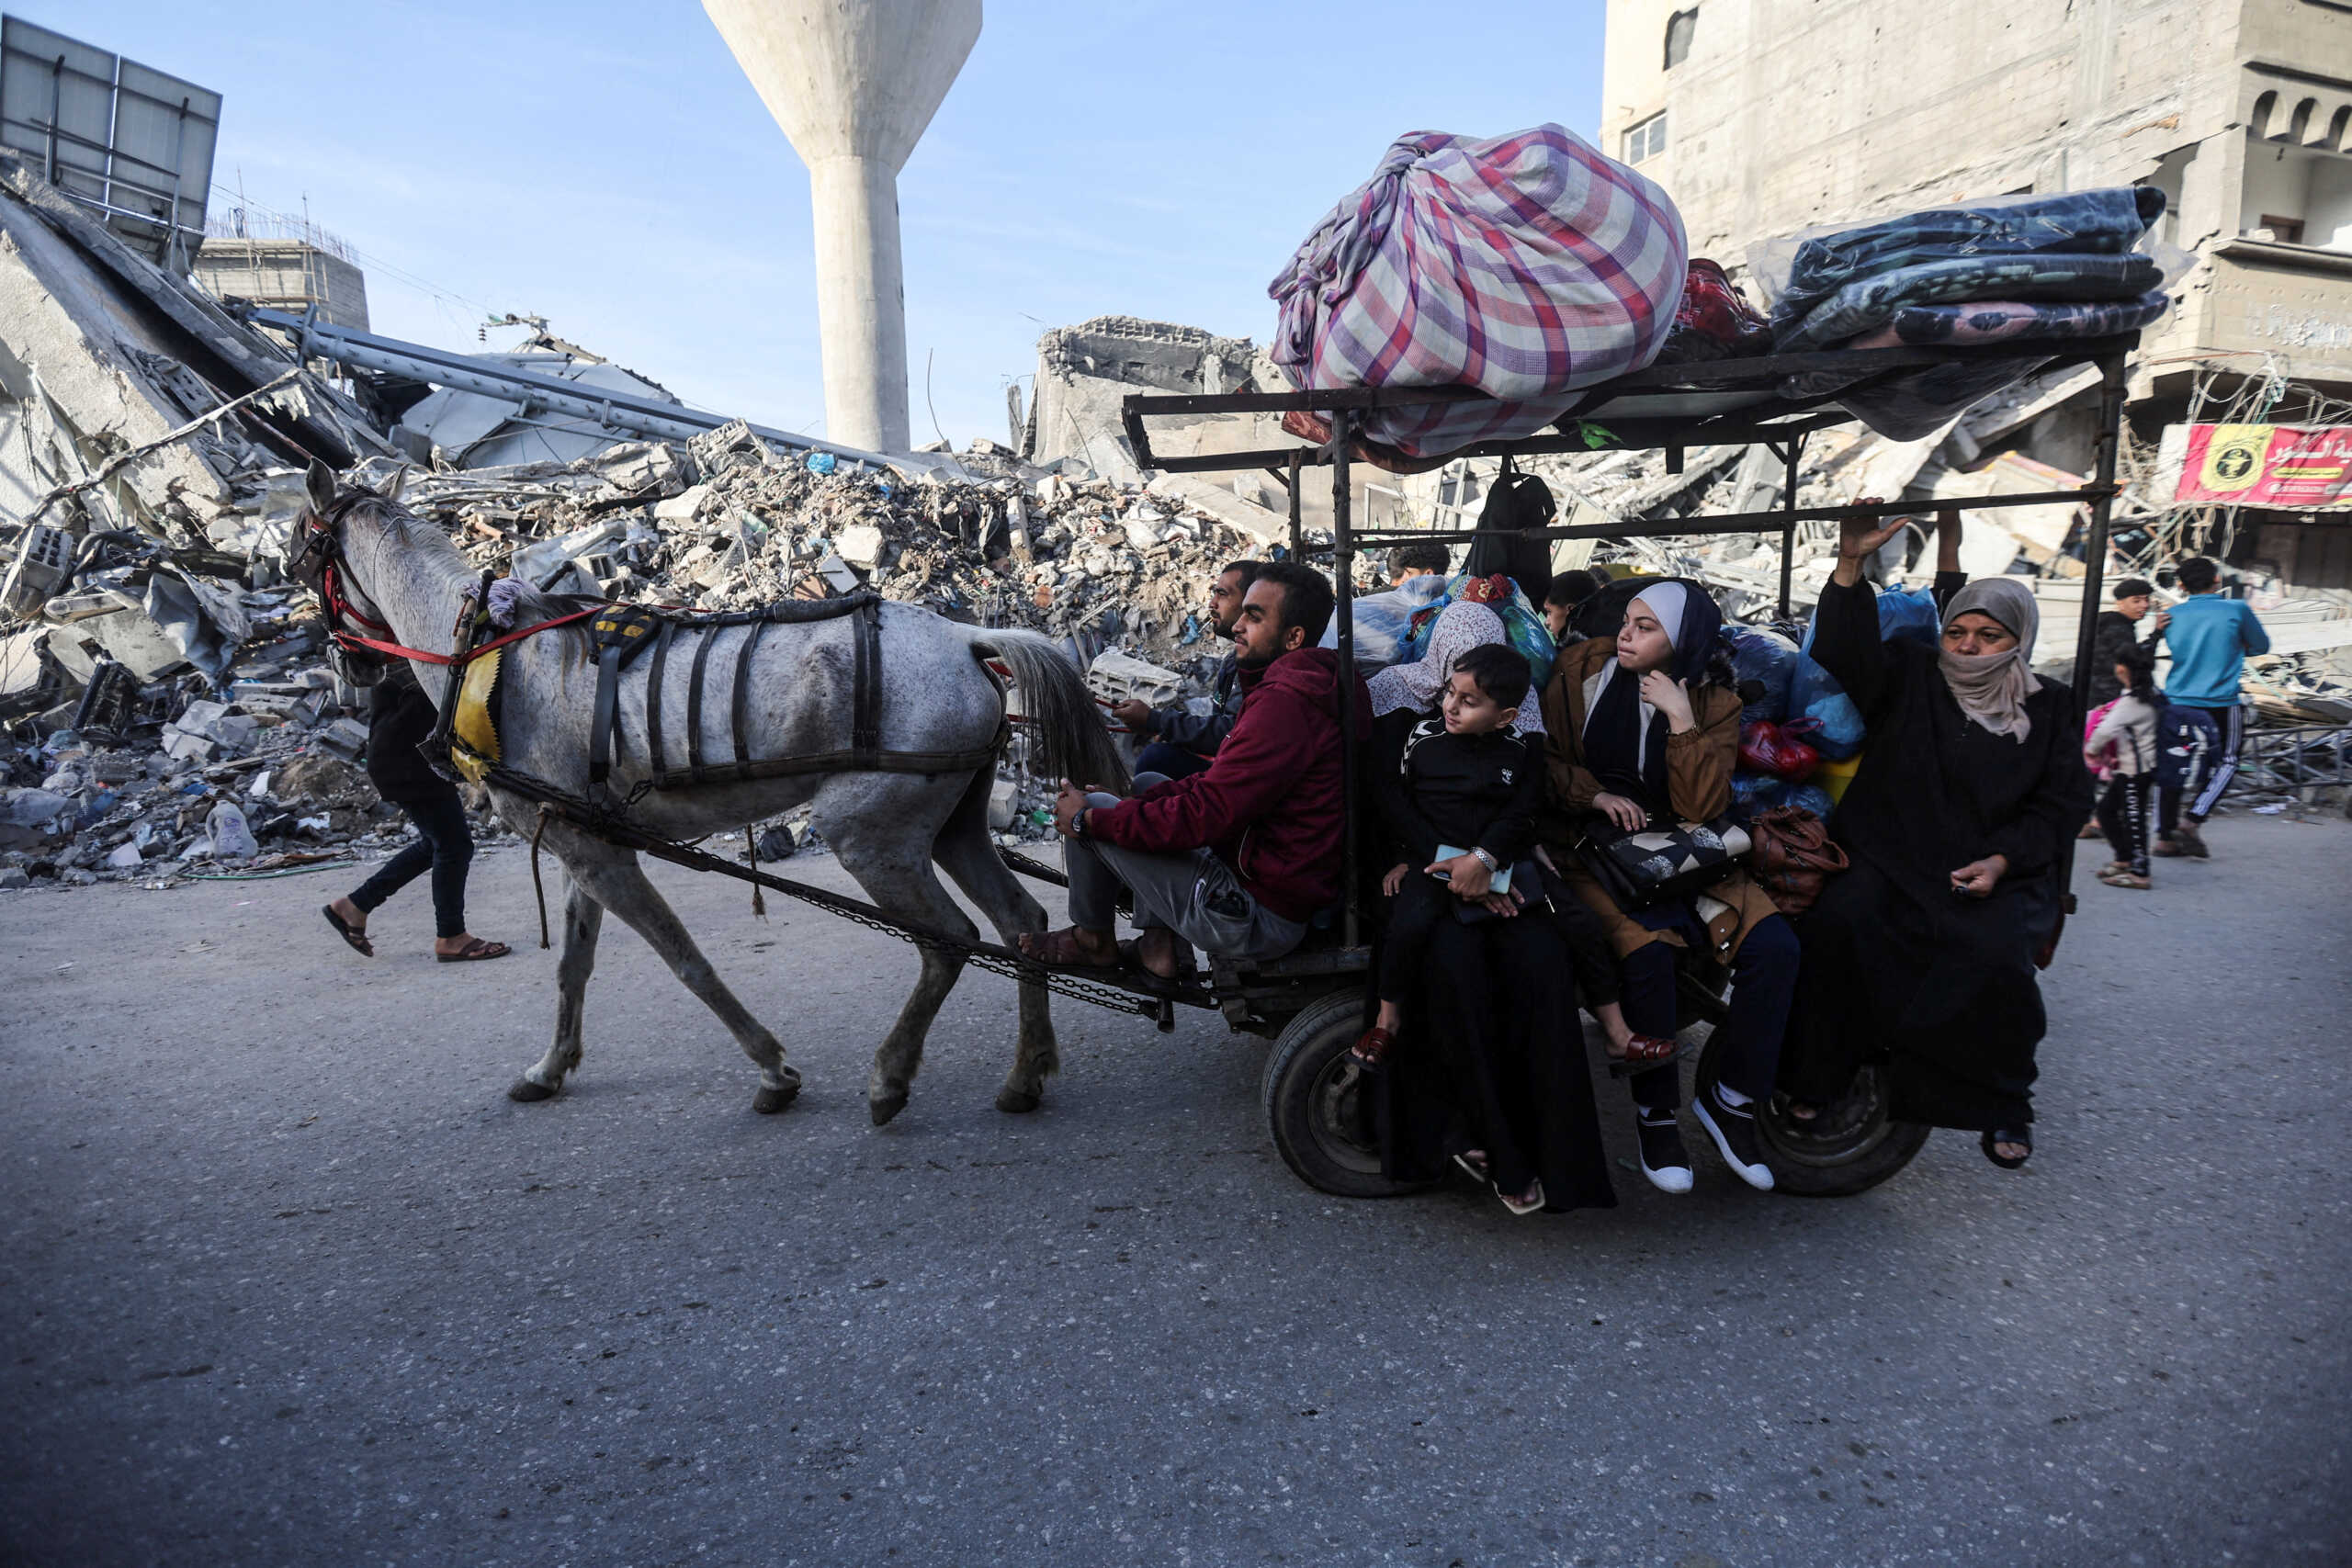 Λωρίδα της Γάζας: Καραβάνια Παλαιστινίων πήραν τον δρόμο της επιστροφής μετά την εκεχειρία